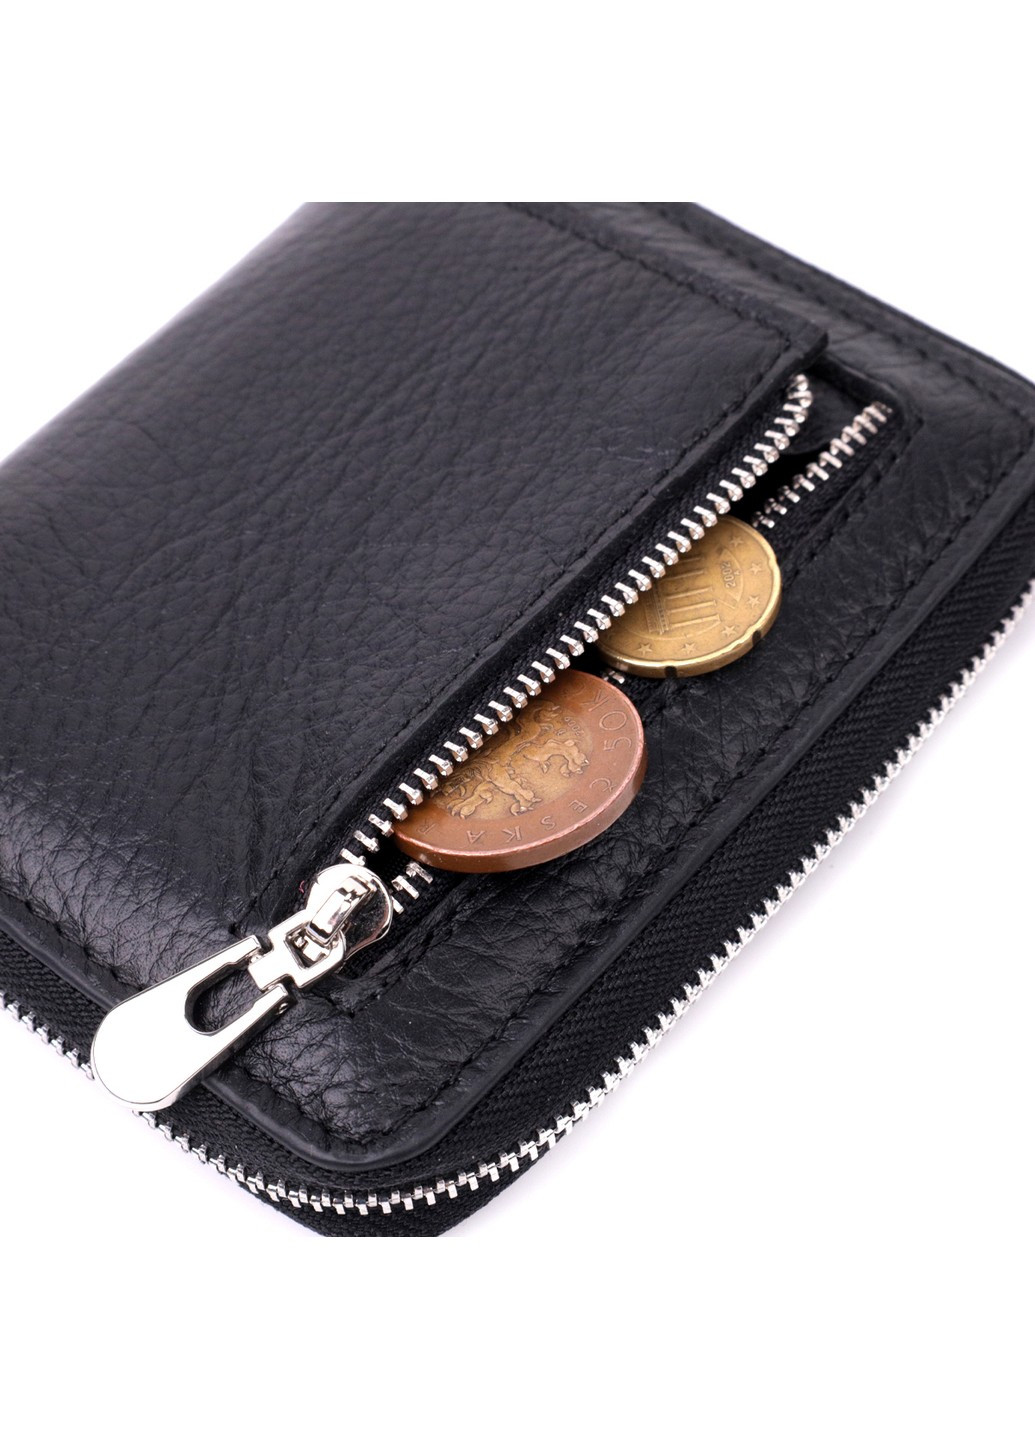 Женский кожаный кошелек на молнии с металлическим логотипом производителя 19483 Черный st leather (277980493)